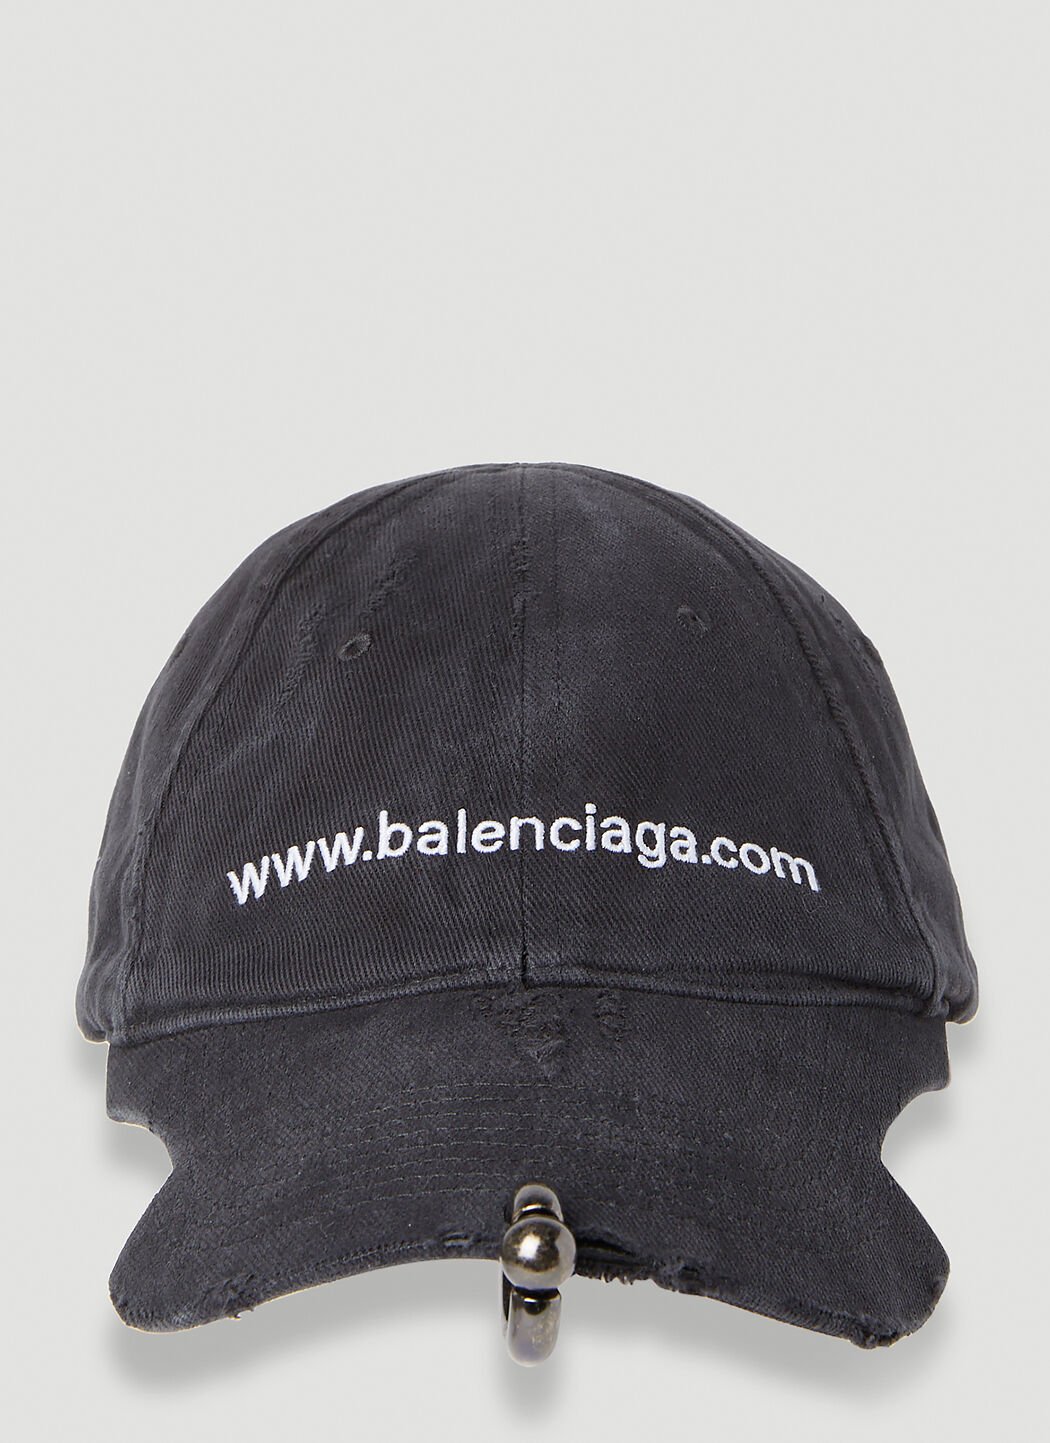 Vivienne Westwood Website 穿孔棒球帽 黑色 vvw0254048